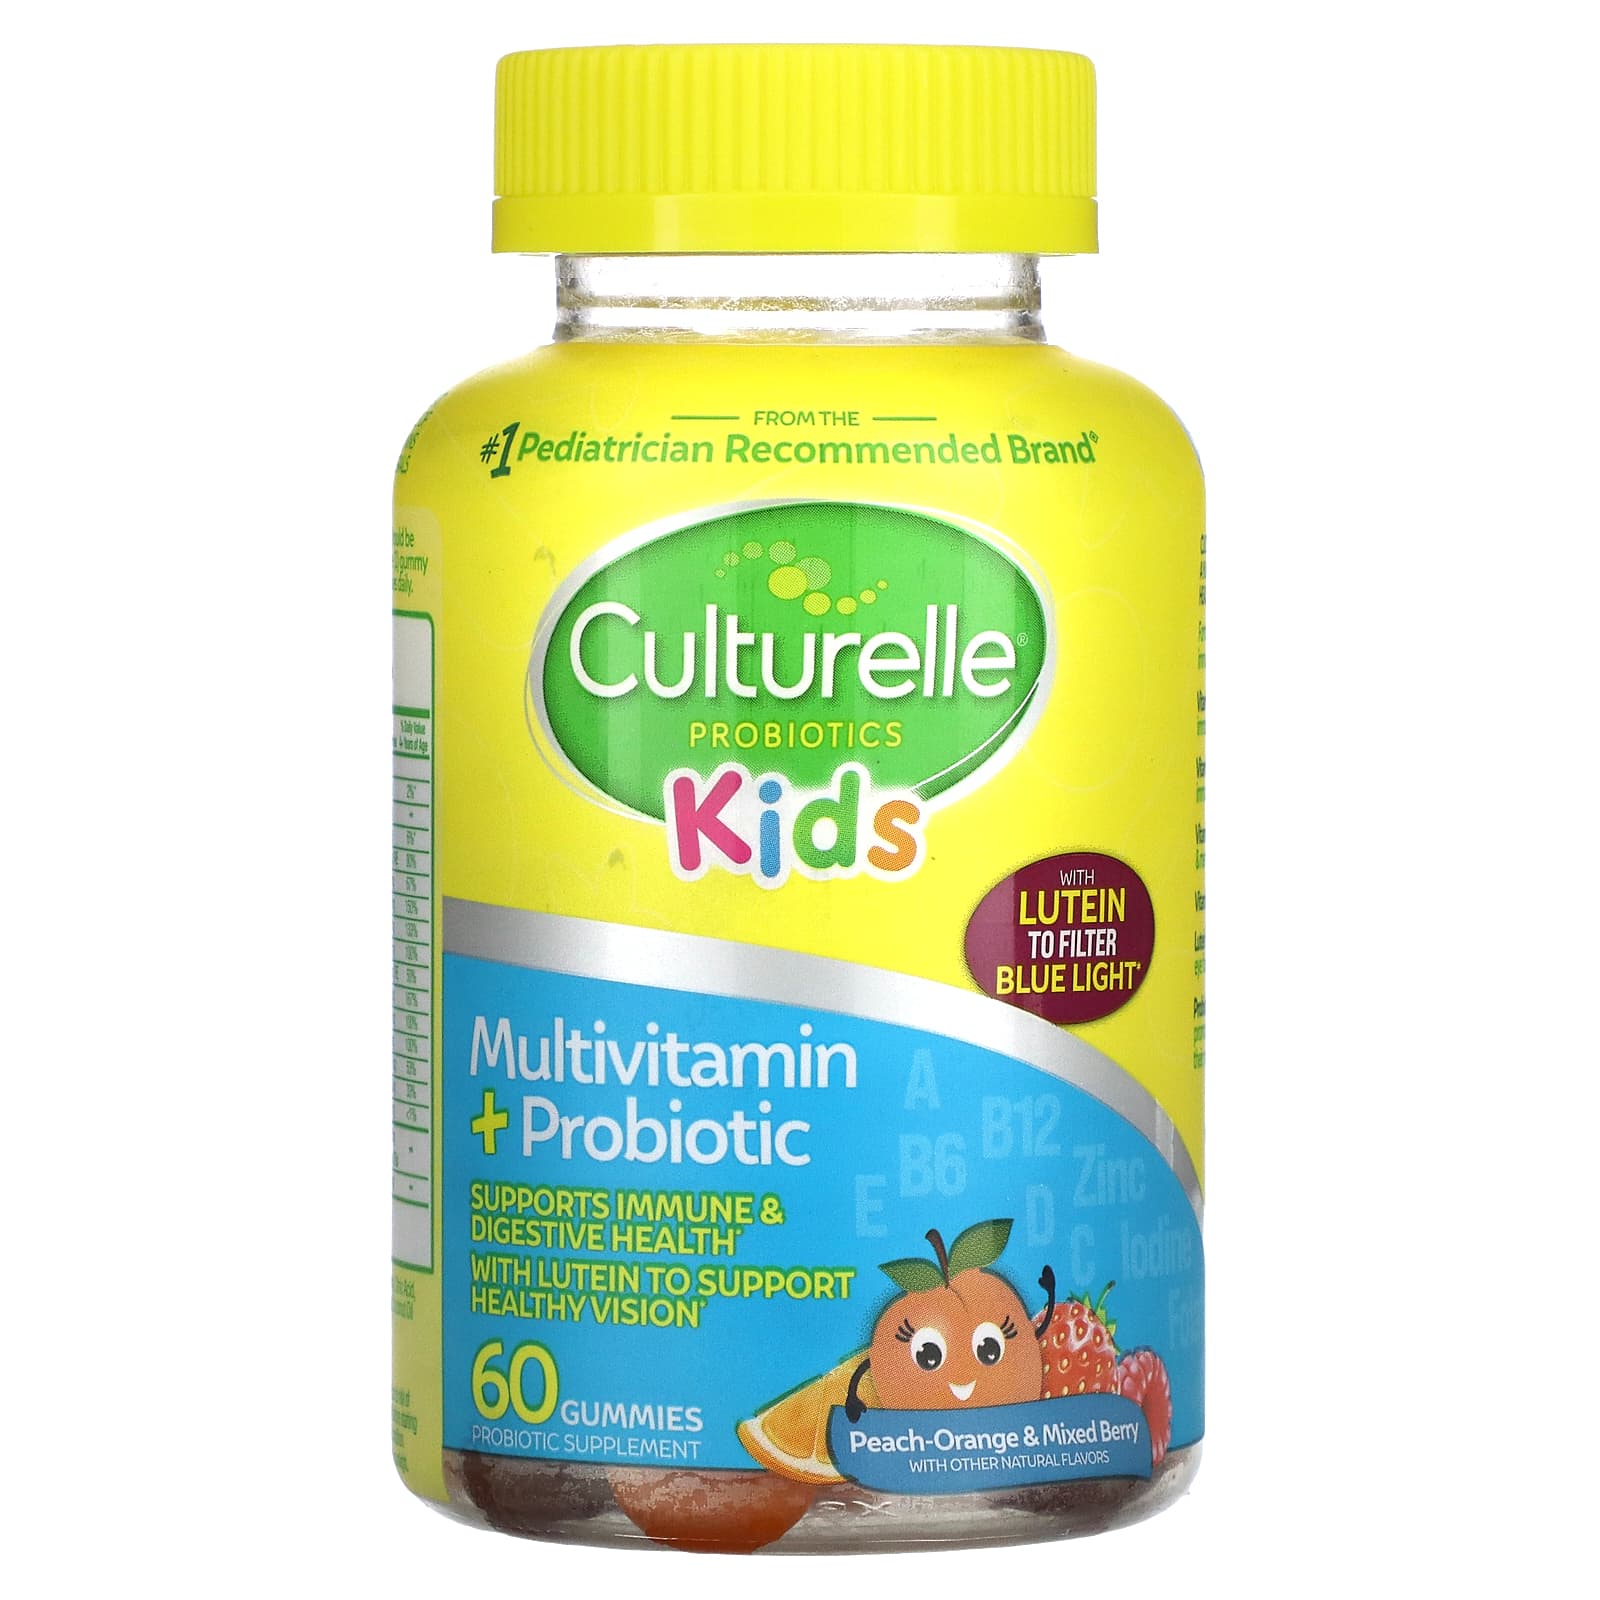 Детские пробиотики, мультивитамины и пробиотики, персик-апельсин и ягодное ассорти, 60 жевательных таблеток Culturelle